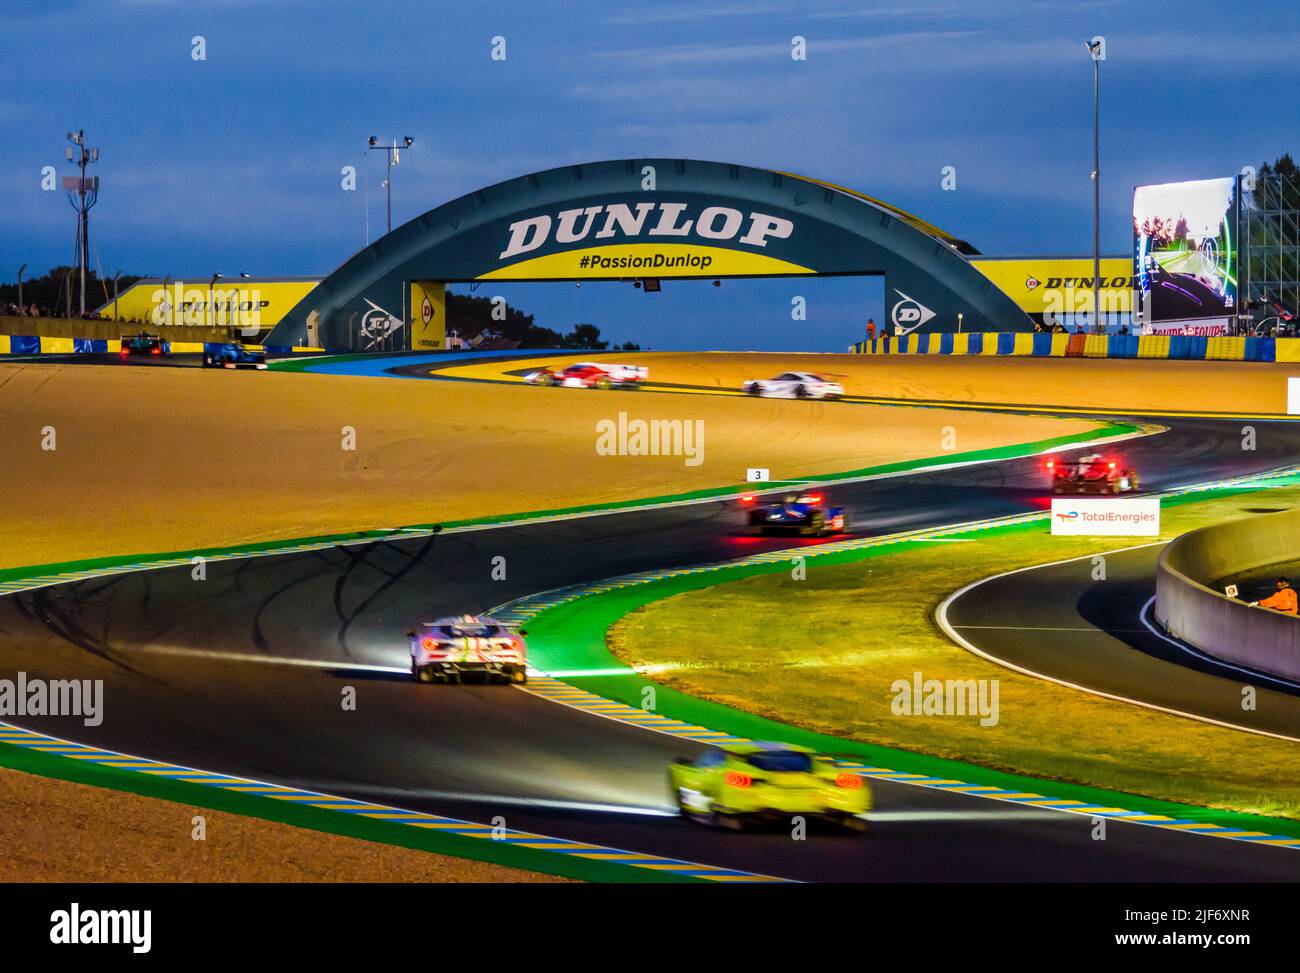 Le vetture da corsa gestiscono la chicane Dunlop di notte prima di passare sotto il ponte pedonale Dunlop sul circuito de la Sarthe durante la 24 ore di le Mans. Foto Stock